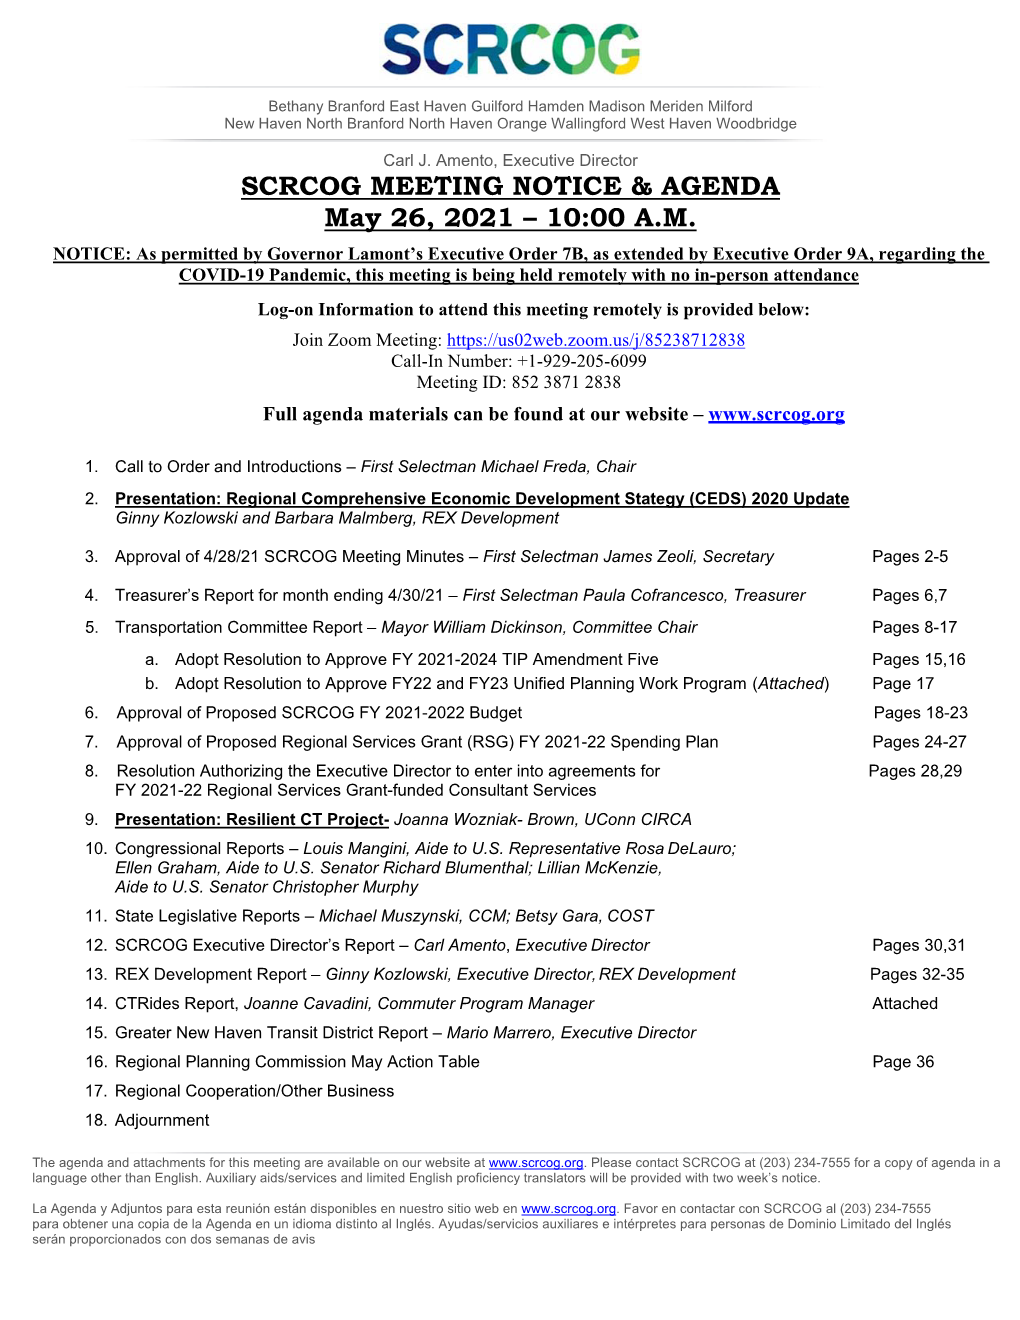 May 2021 SCRCOG Board Agenda